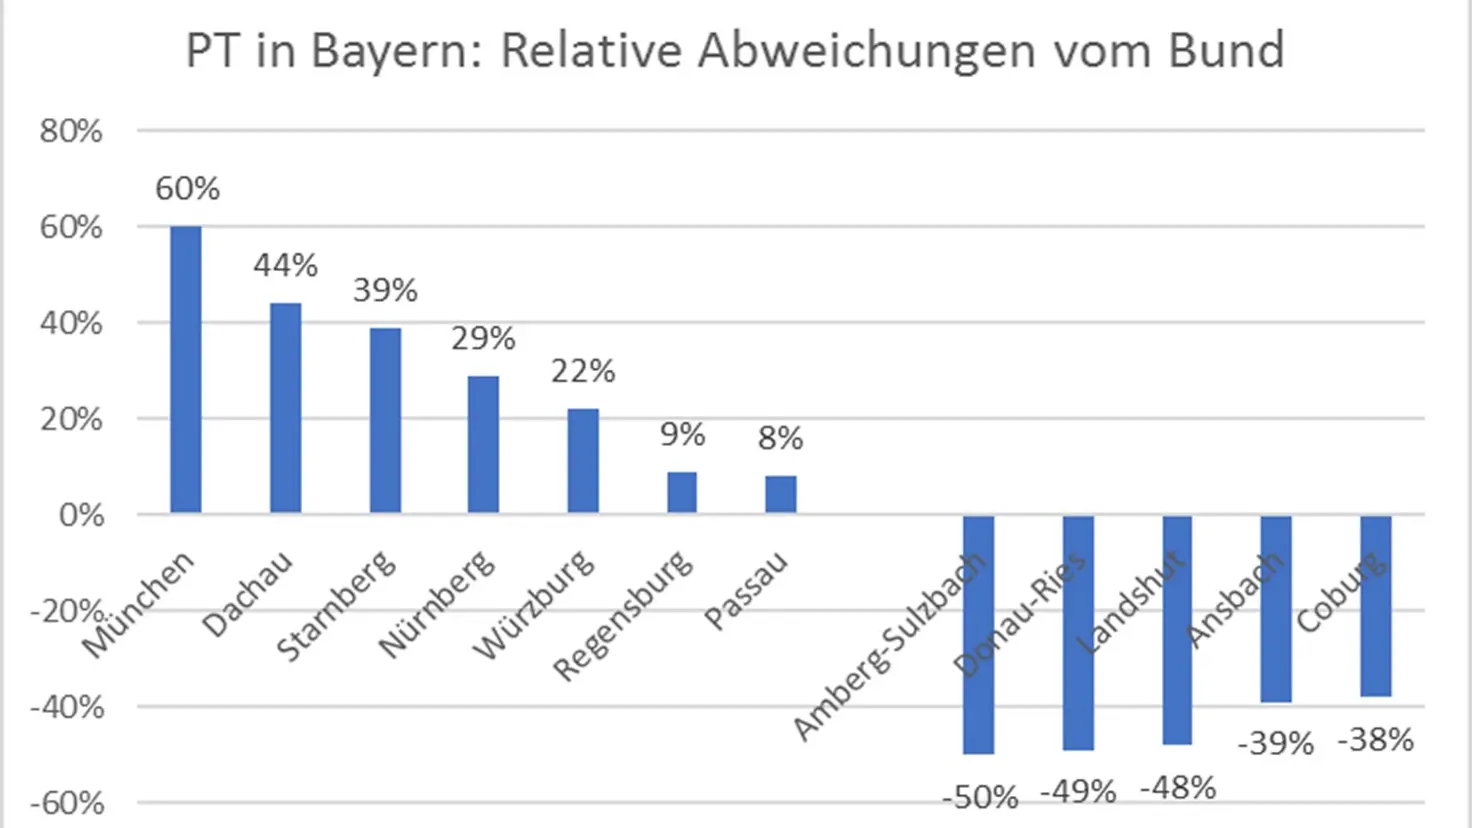 PT in Bayern: Relative Abweichung vom Bund nach Kreisen